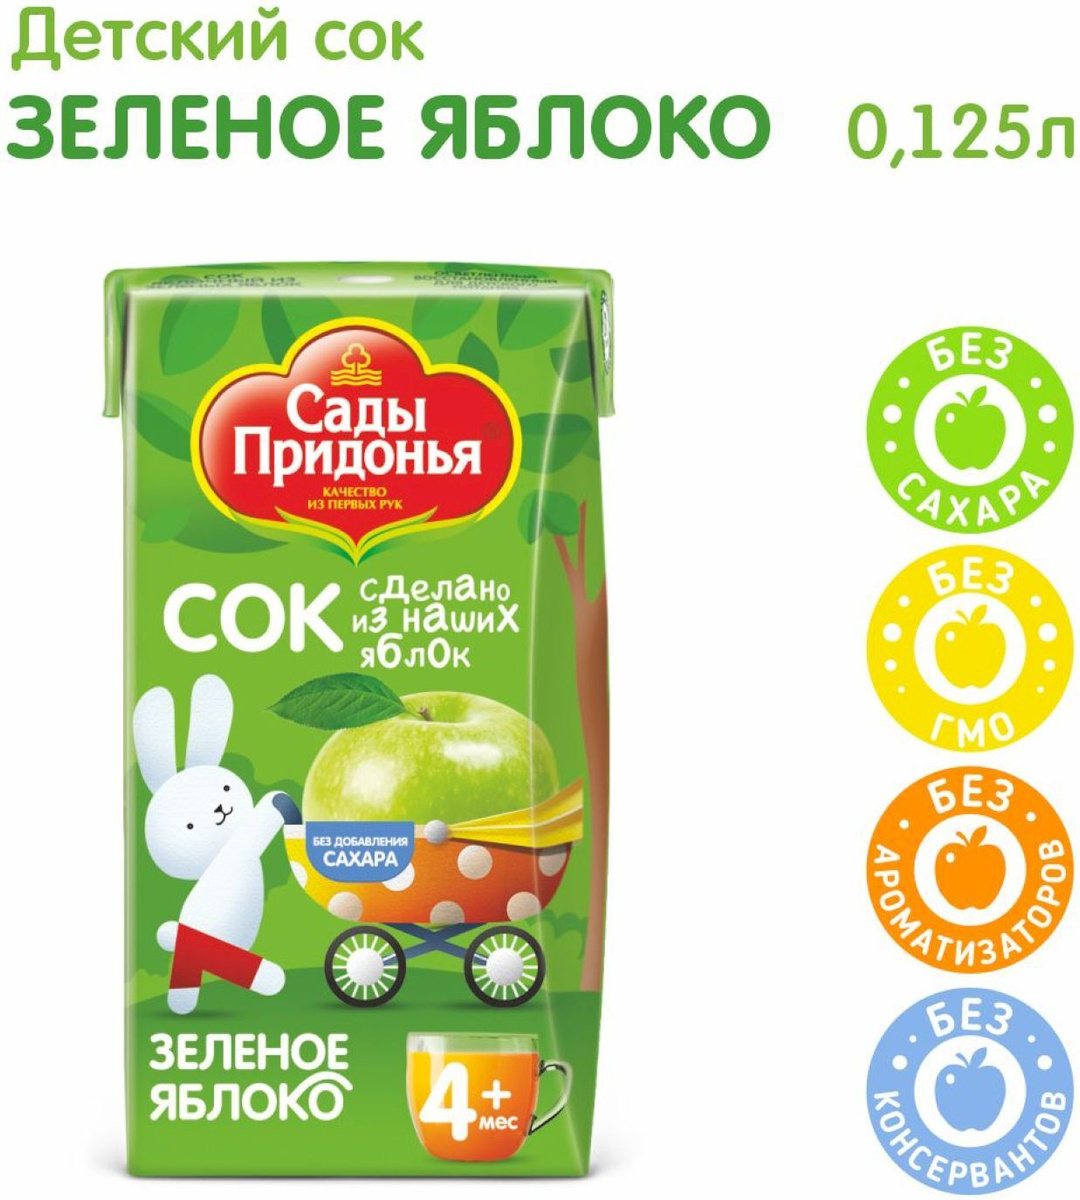 Сок детский осветленный восстановленный Сады Придонья, яблочный из зеленых яблок, 0,125 л х 18  #1